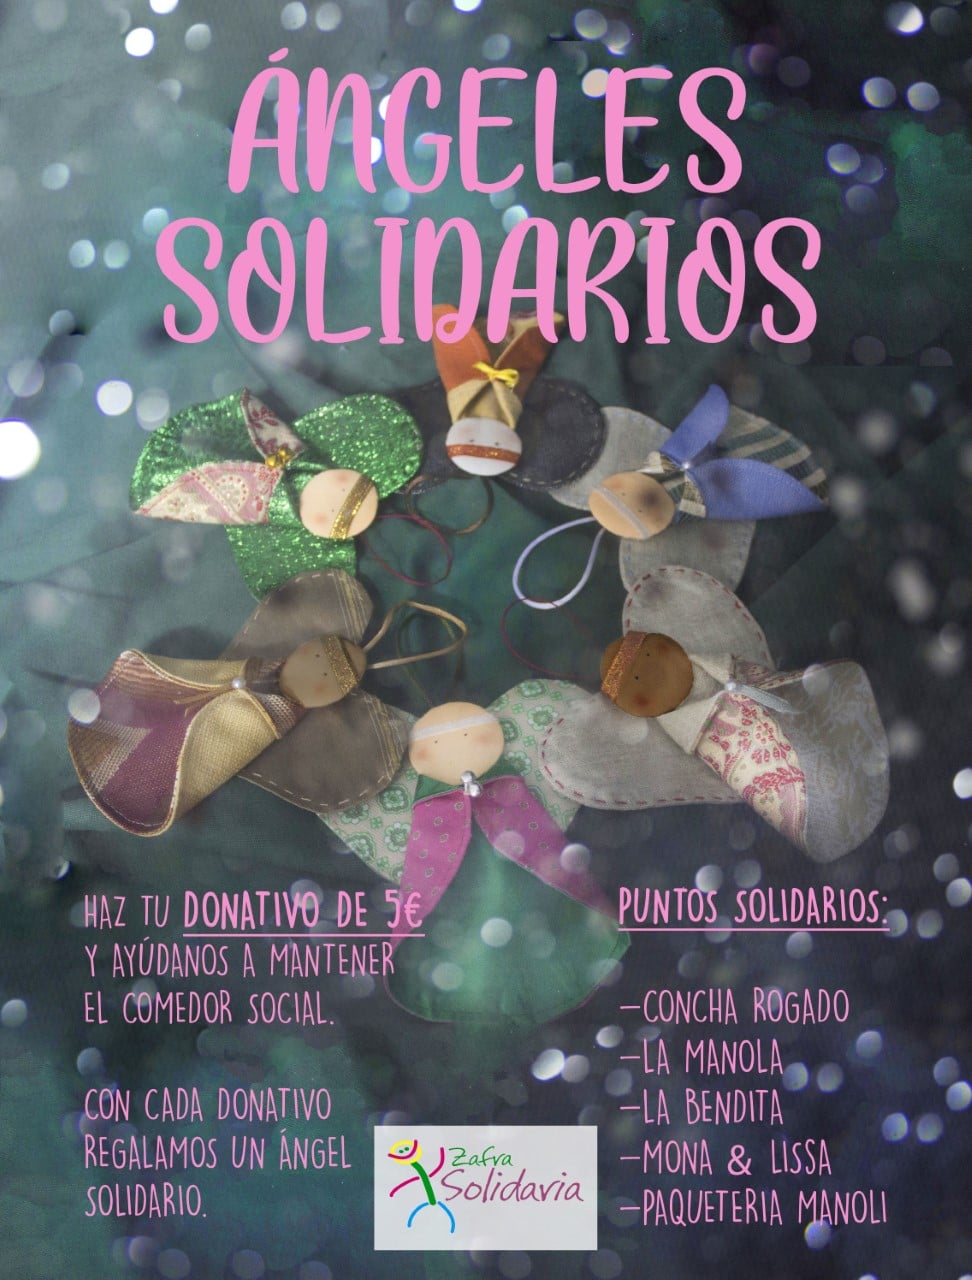 Ángeles Solidarios. Zafra Solidaria